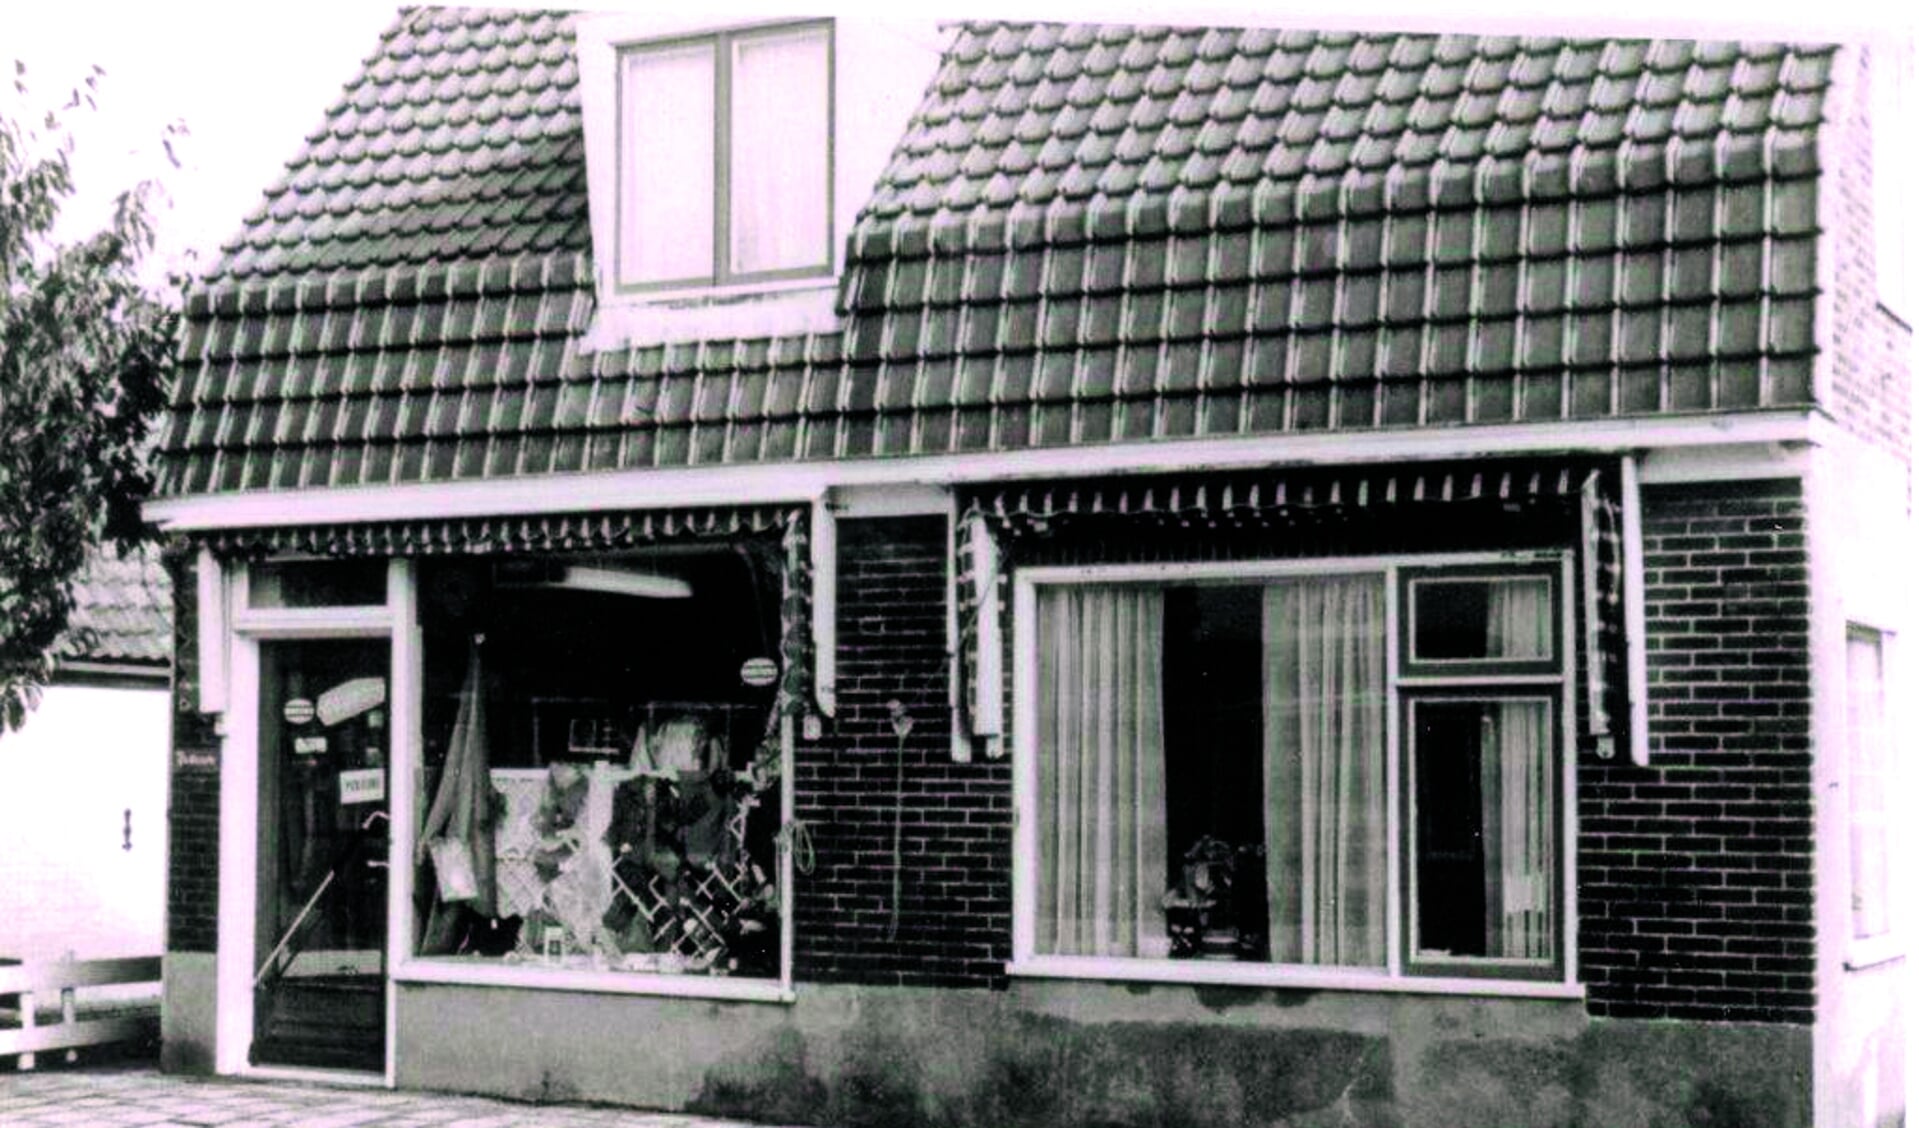 De oude Pancrasser winkeltjes; een stukje geschiedenis herleeft tijdens de presentatie van de Historische Vereniging Sint Pancras. (Foto: aangeleverd)